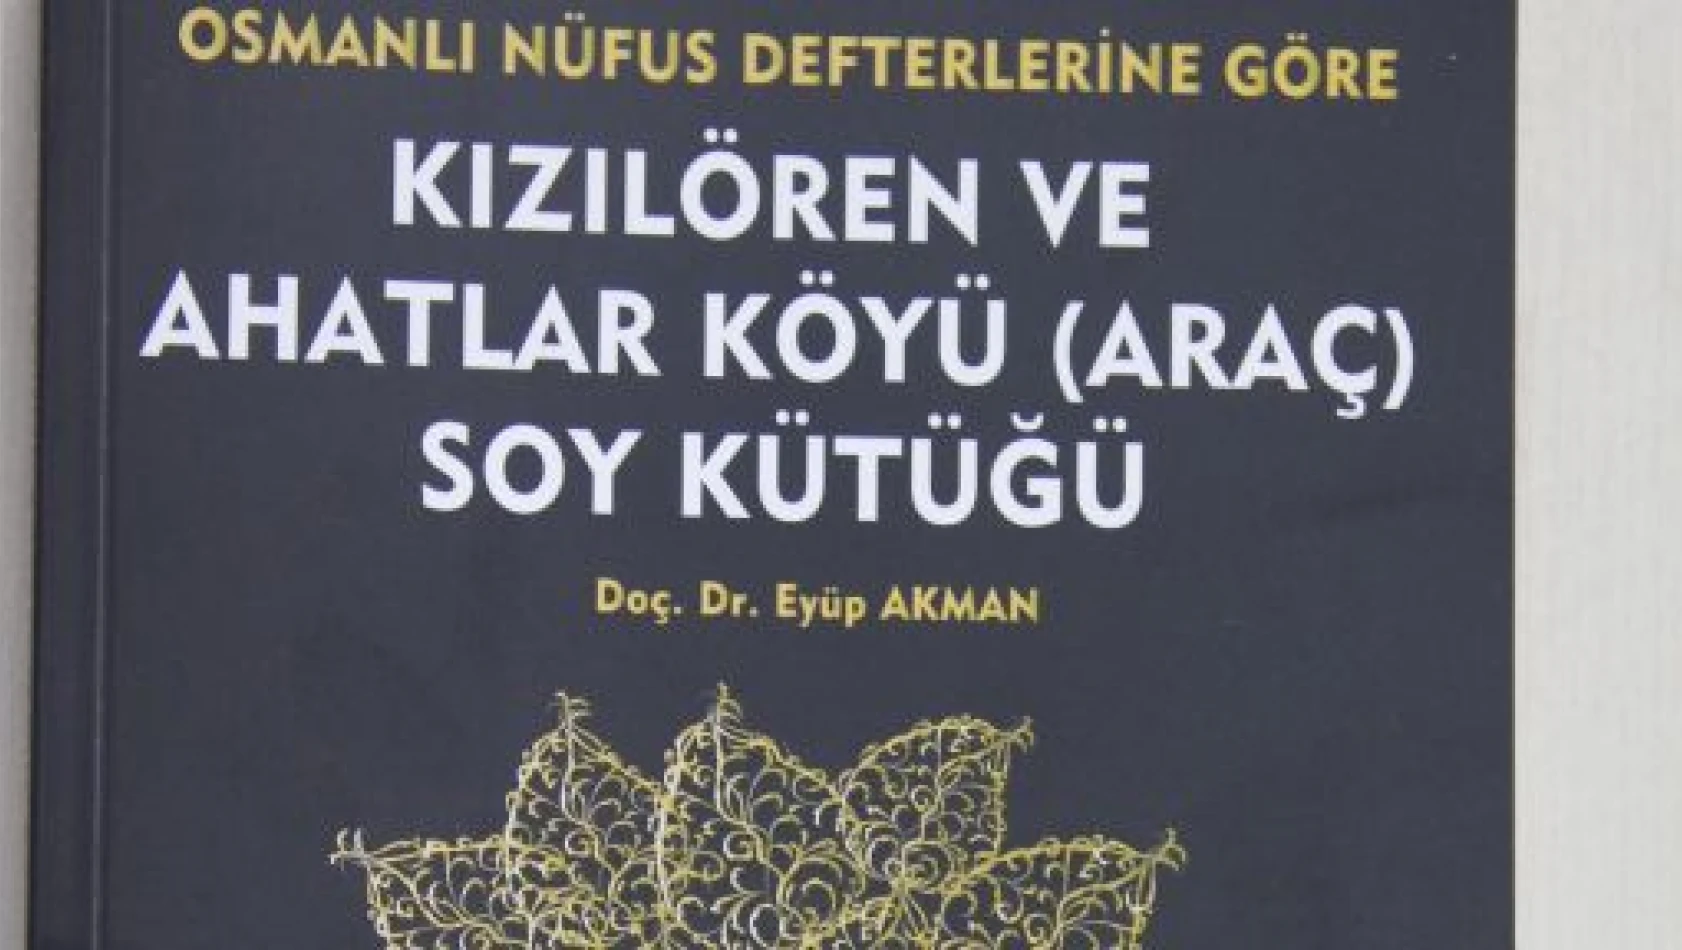 Doç. Dr. Eyüp Akman, 16. kitabını çıkarttı